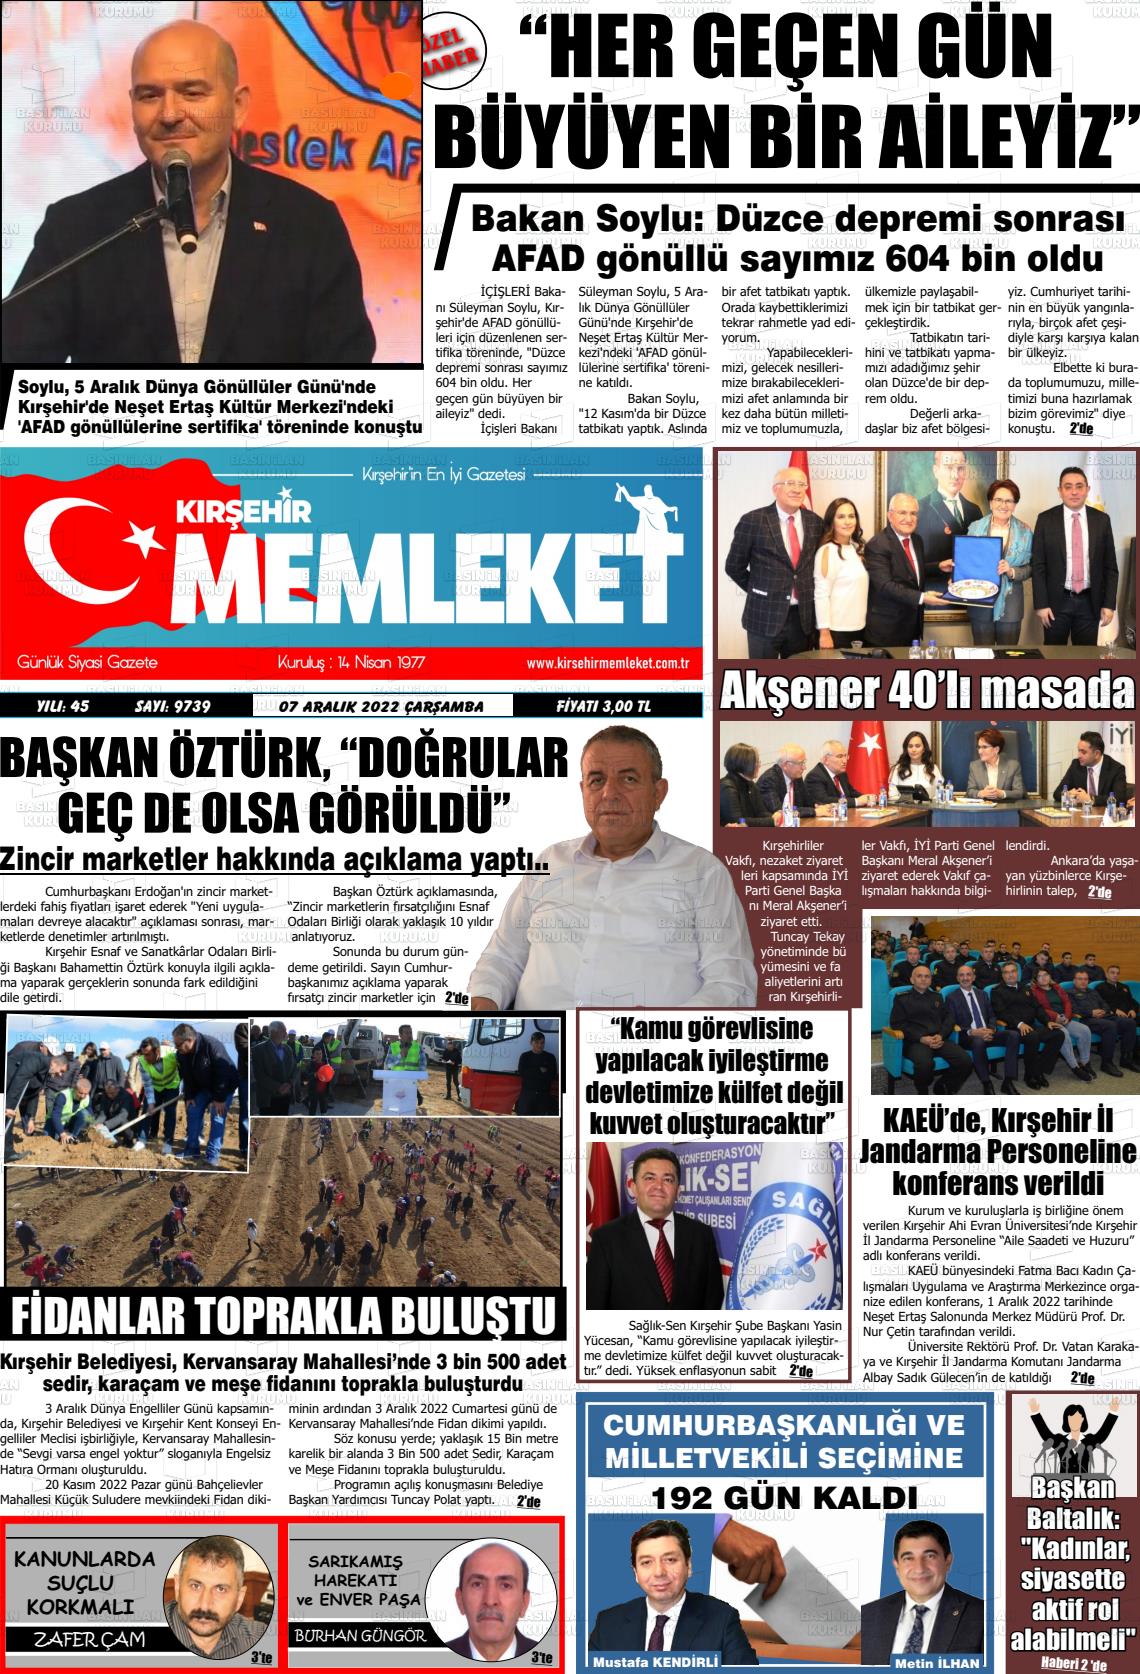 07 Aralık 2022 Kırşehir Memleket Gazete Manşeti